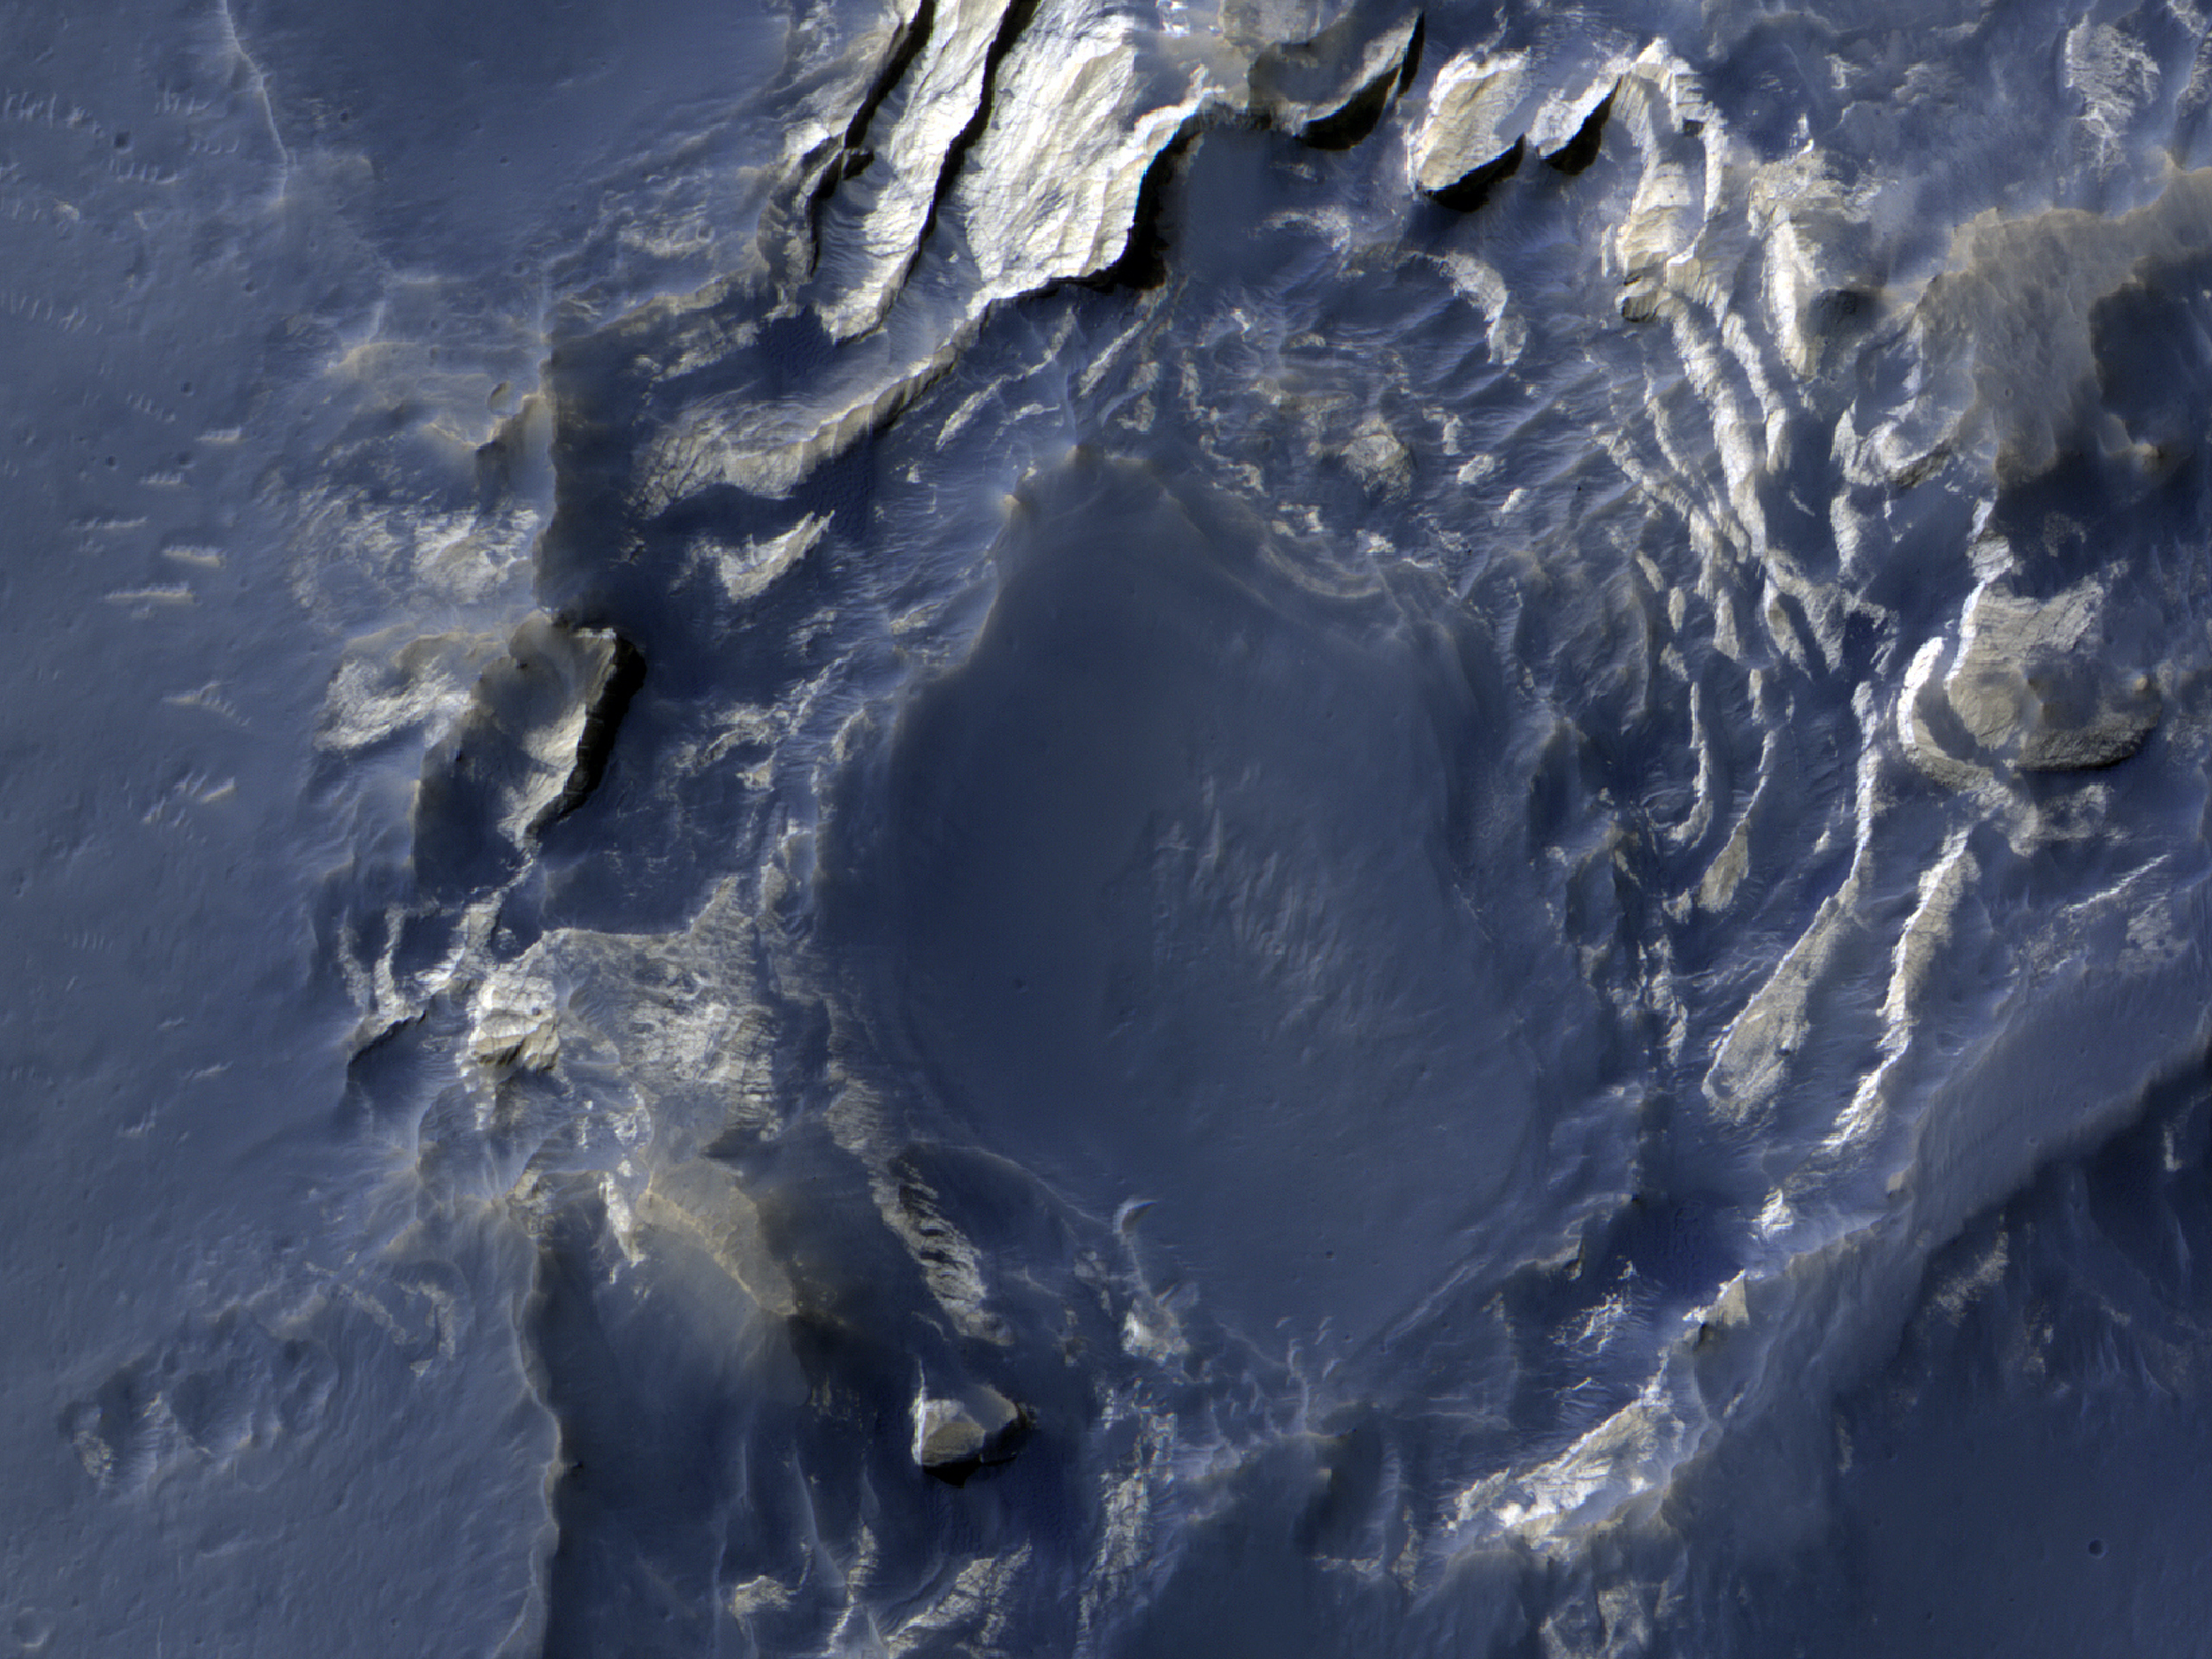 Crommelin Krateri’nin stratigrafisi